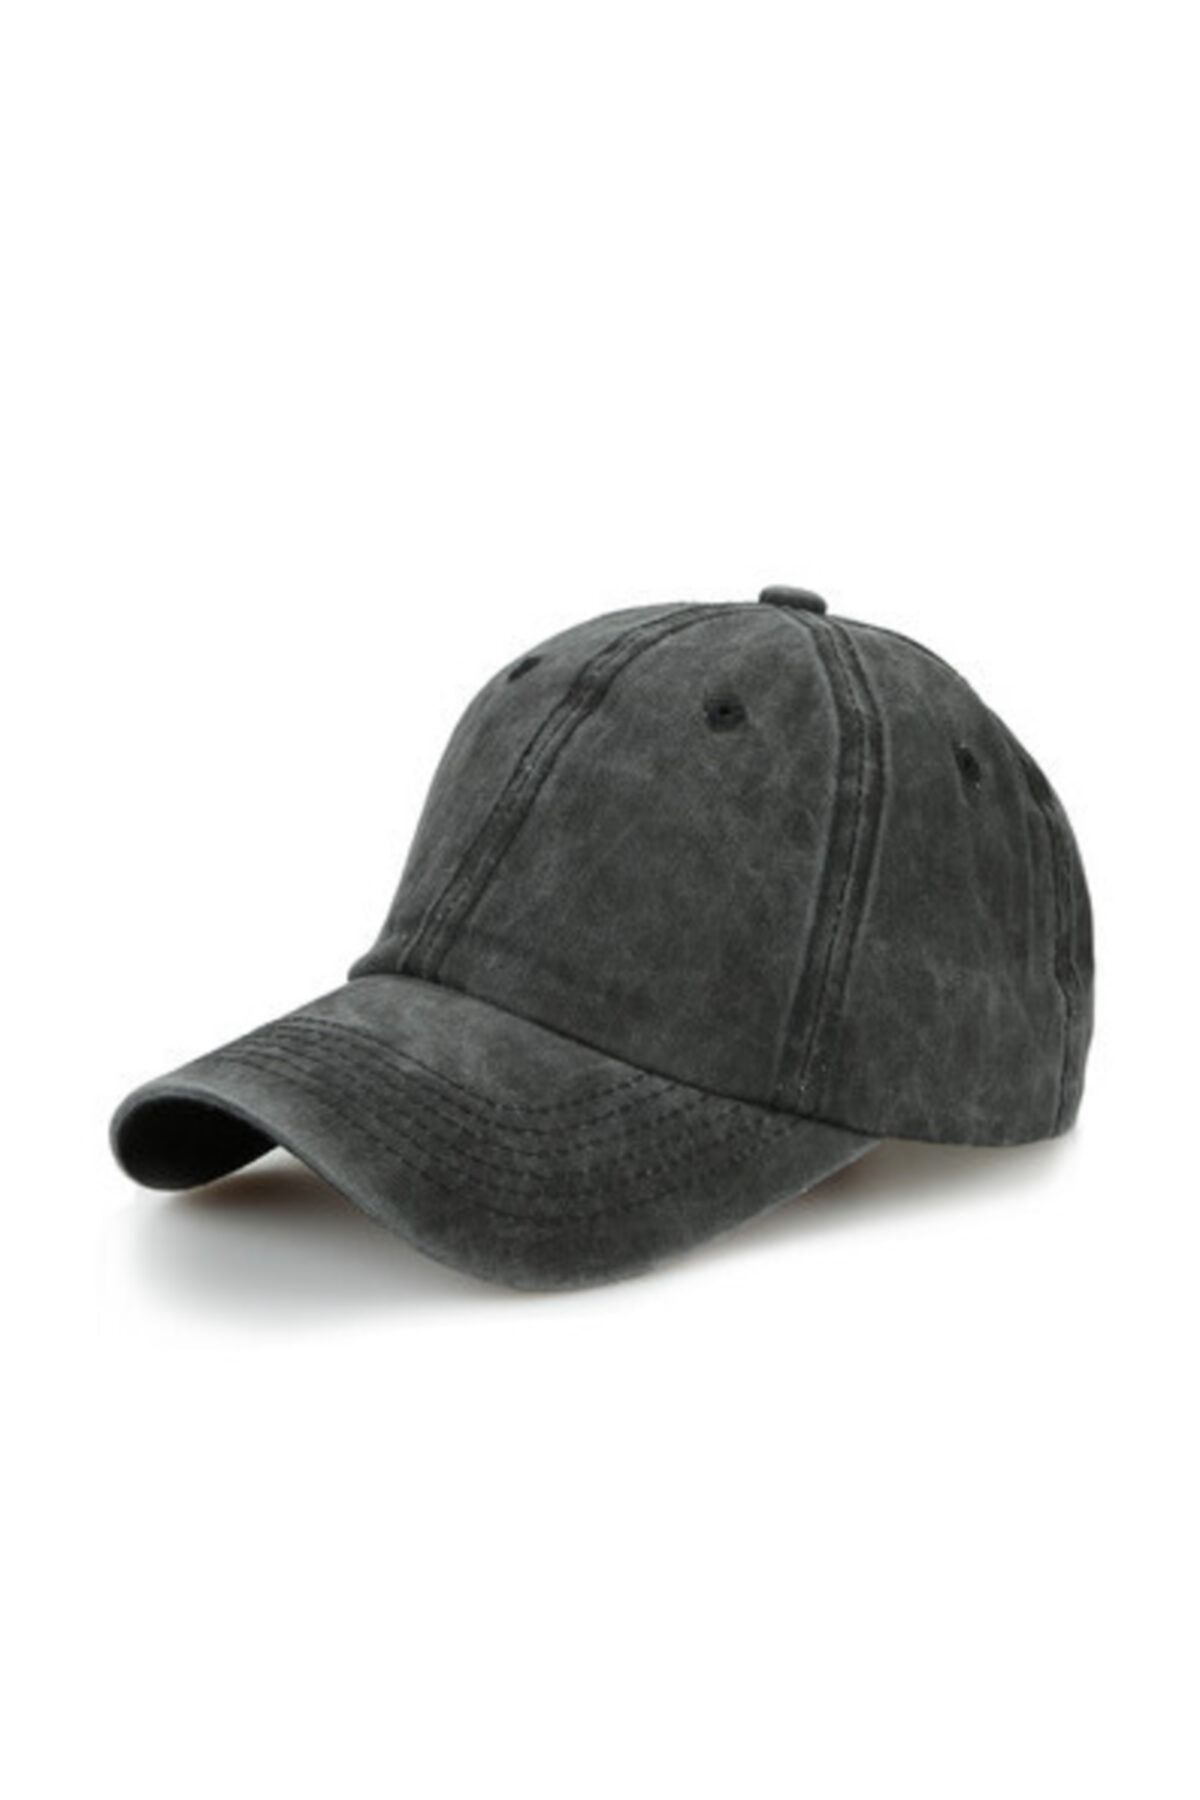 CosmoOutlet Düz Renk Yıkamalı Siyah Şapka